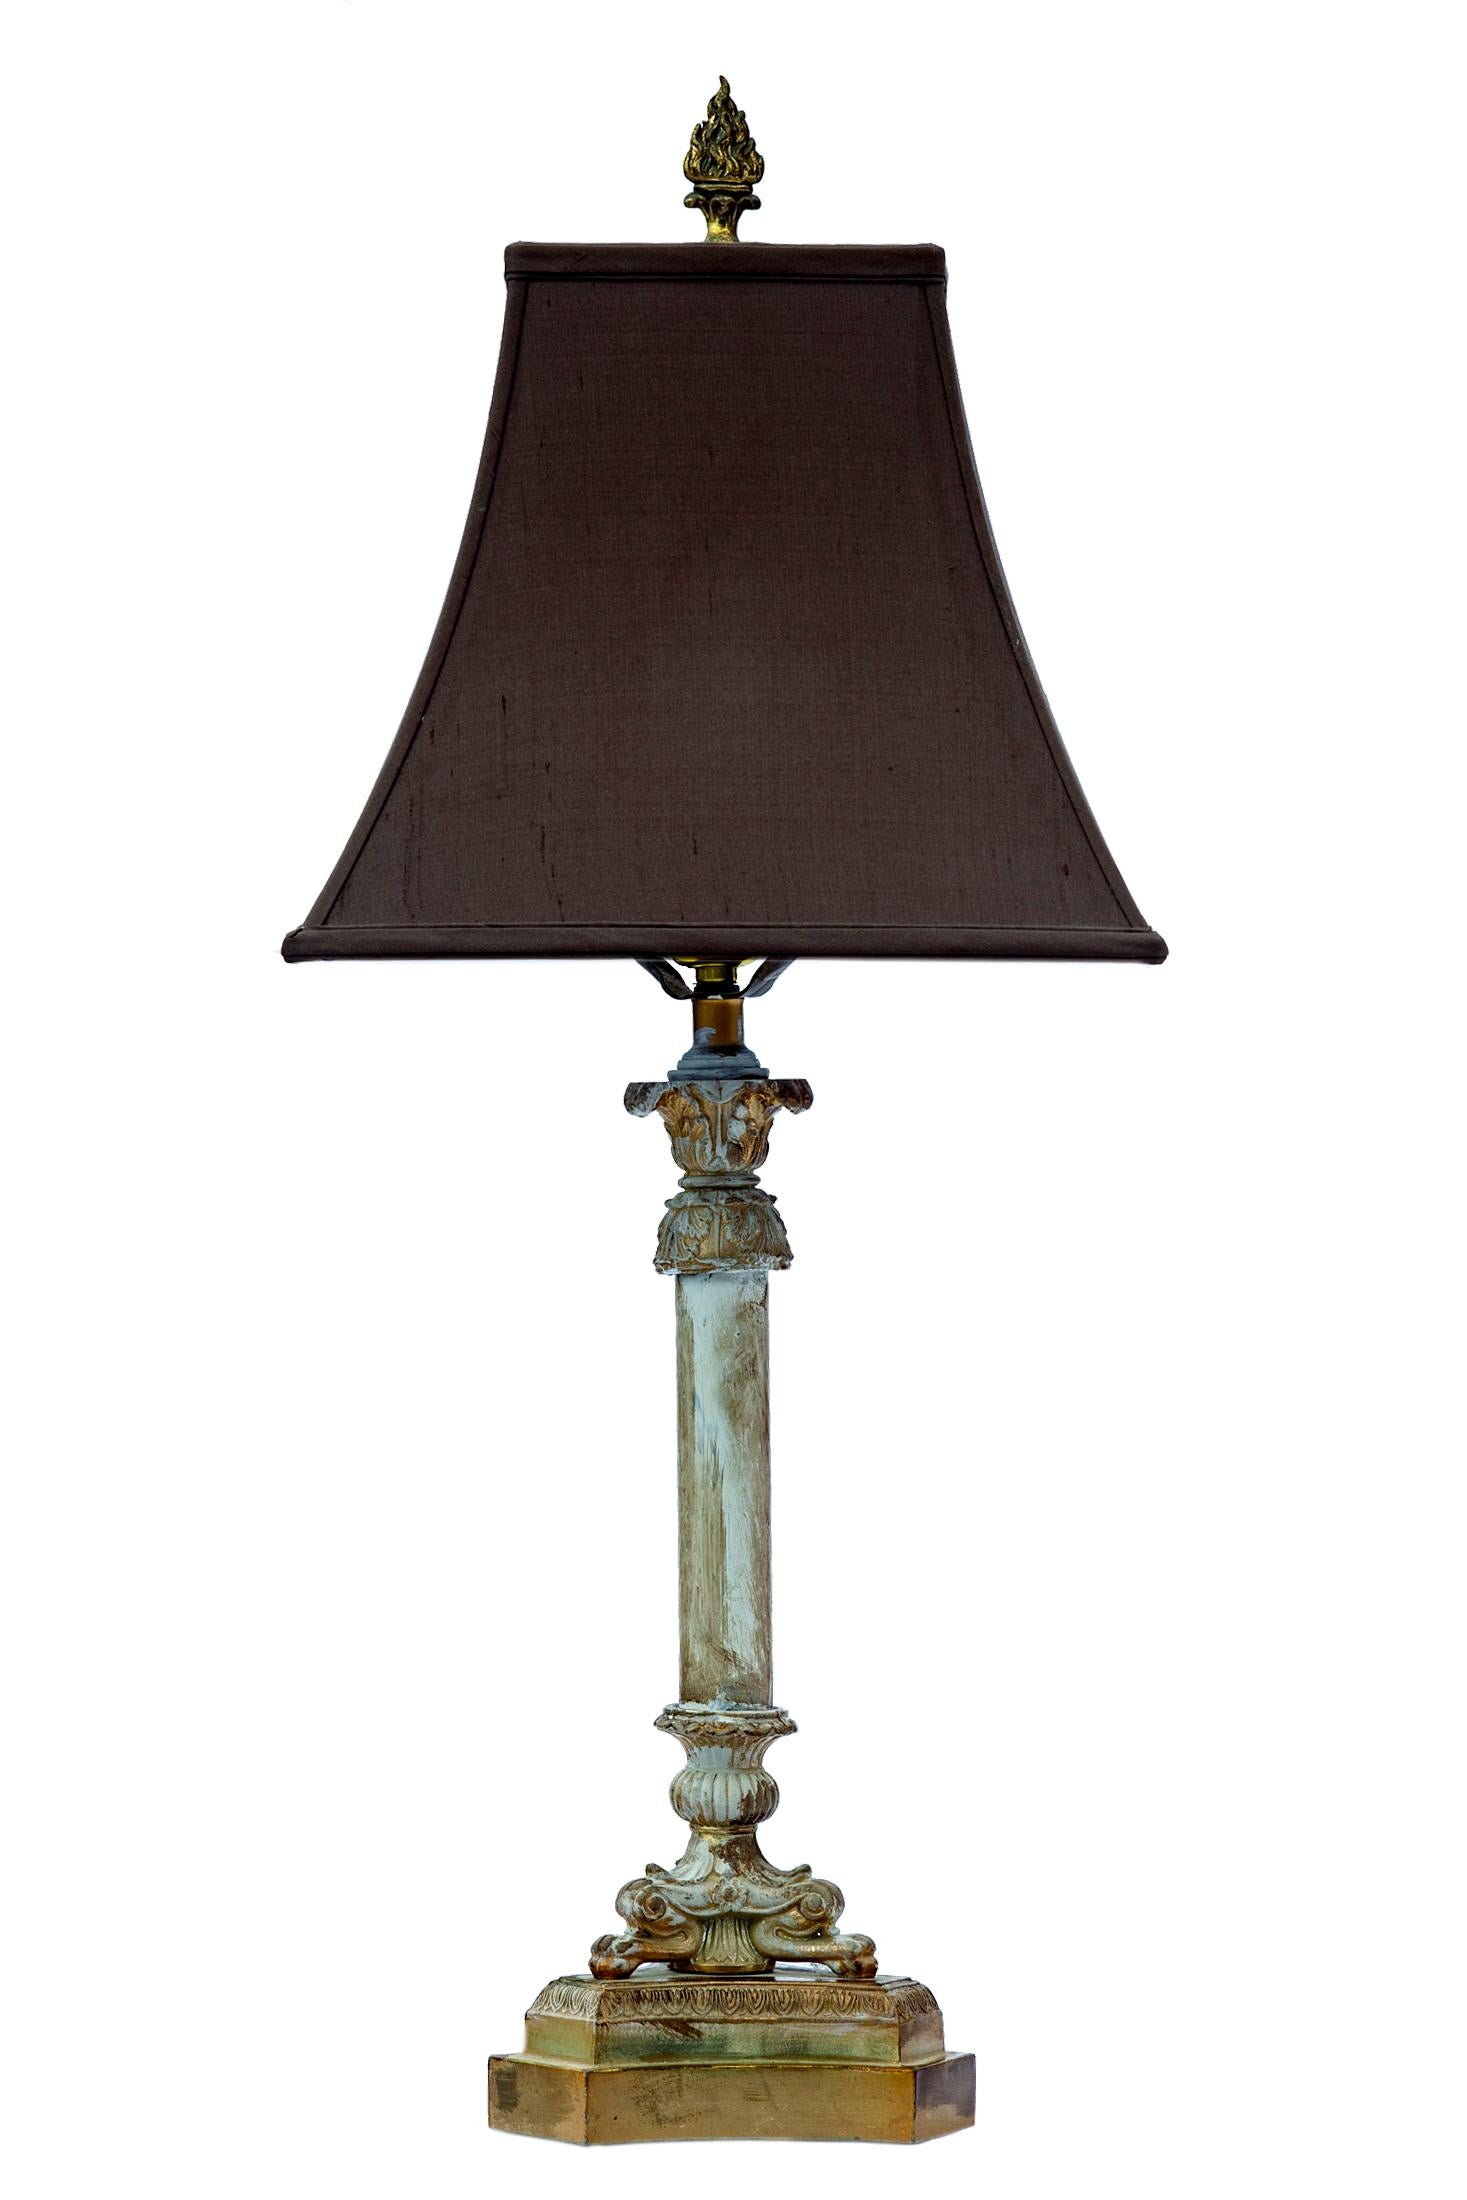 Lampe de table de style classique avec base en laiton et colonne en verre peinte à la main.
RH Abat-jour en soie inclus.
Teinte :
Taille de la base 11